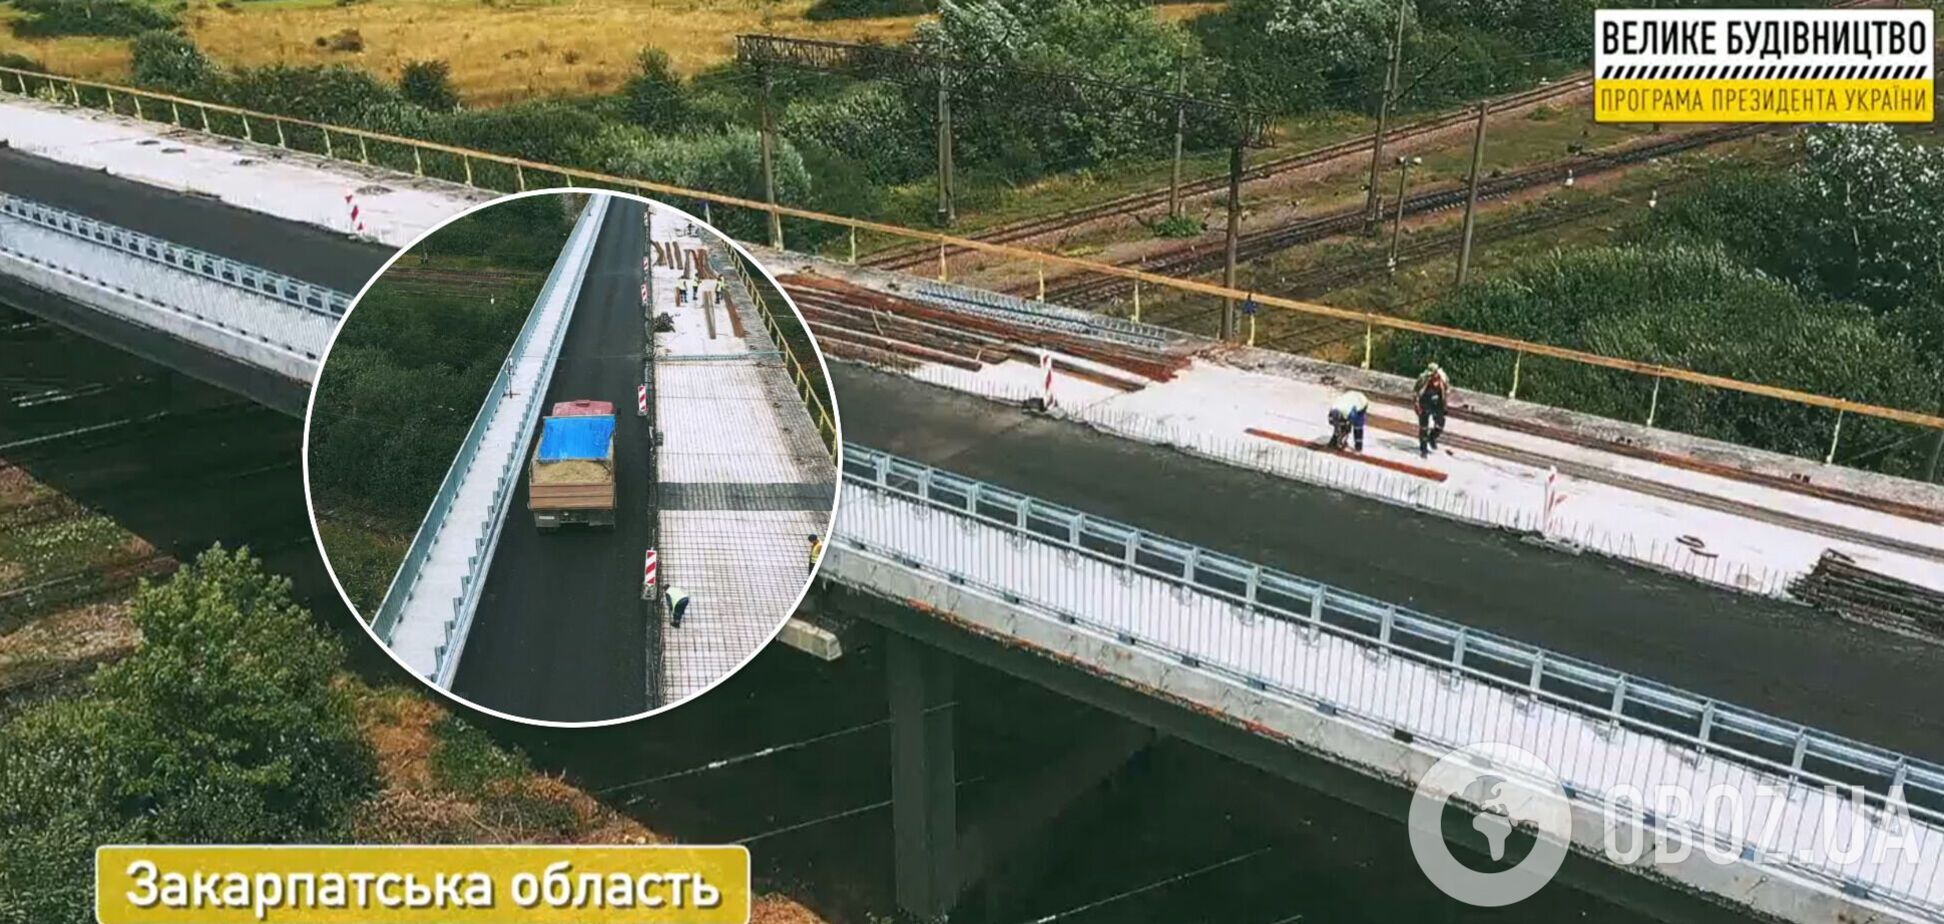 У Закарпатській області 'Велике будівництво' відновлює один з найдовших шляхопроводів країни